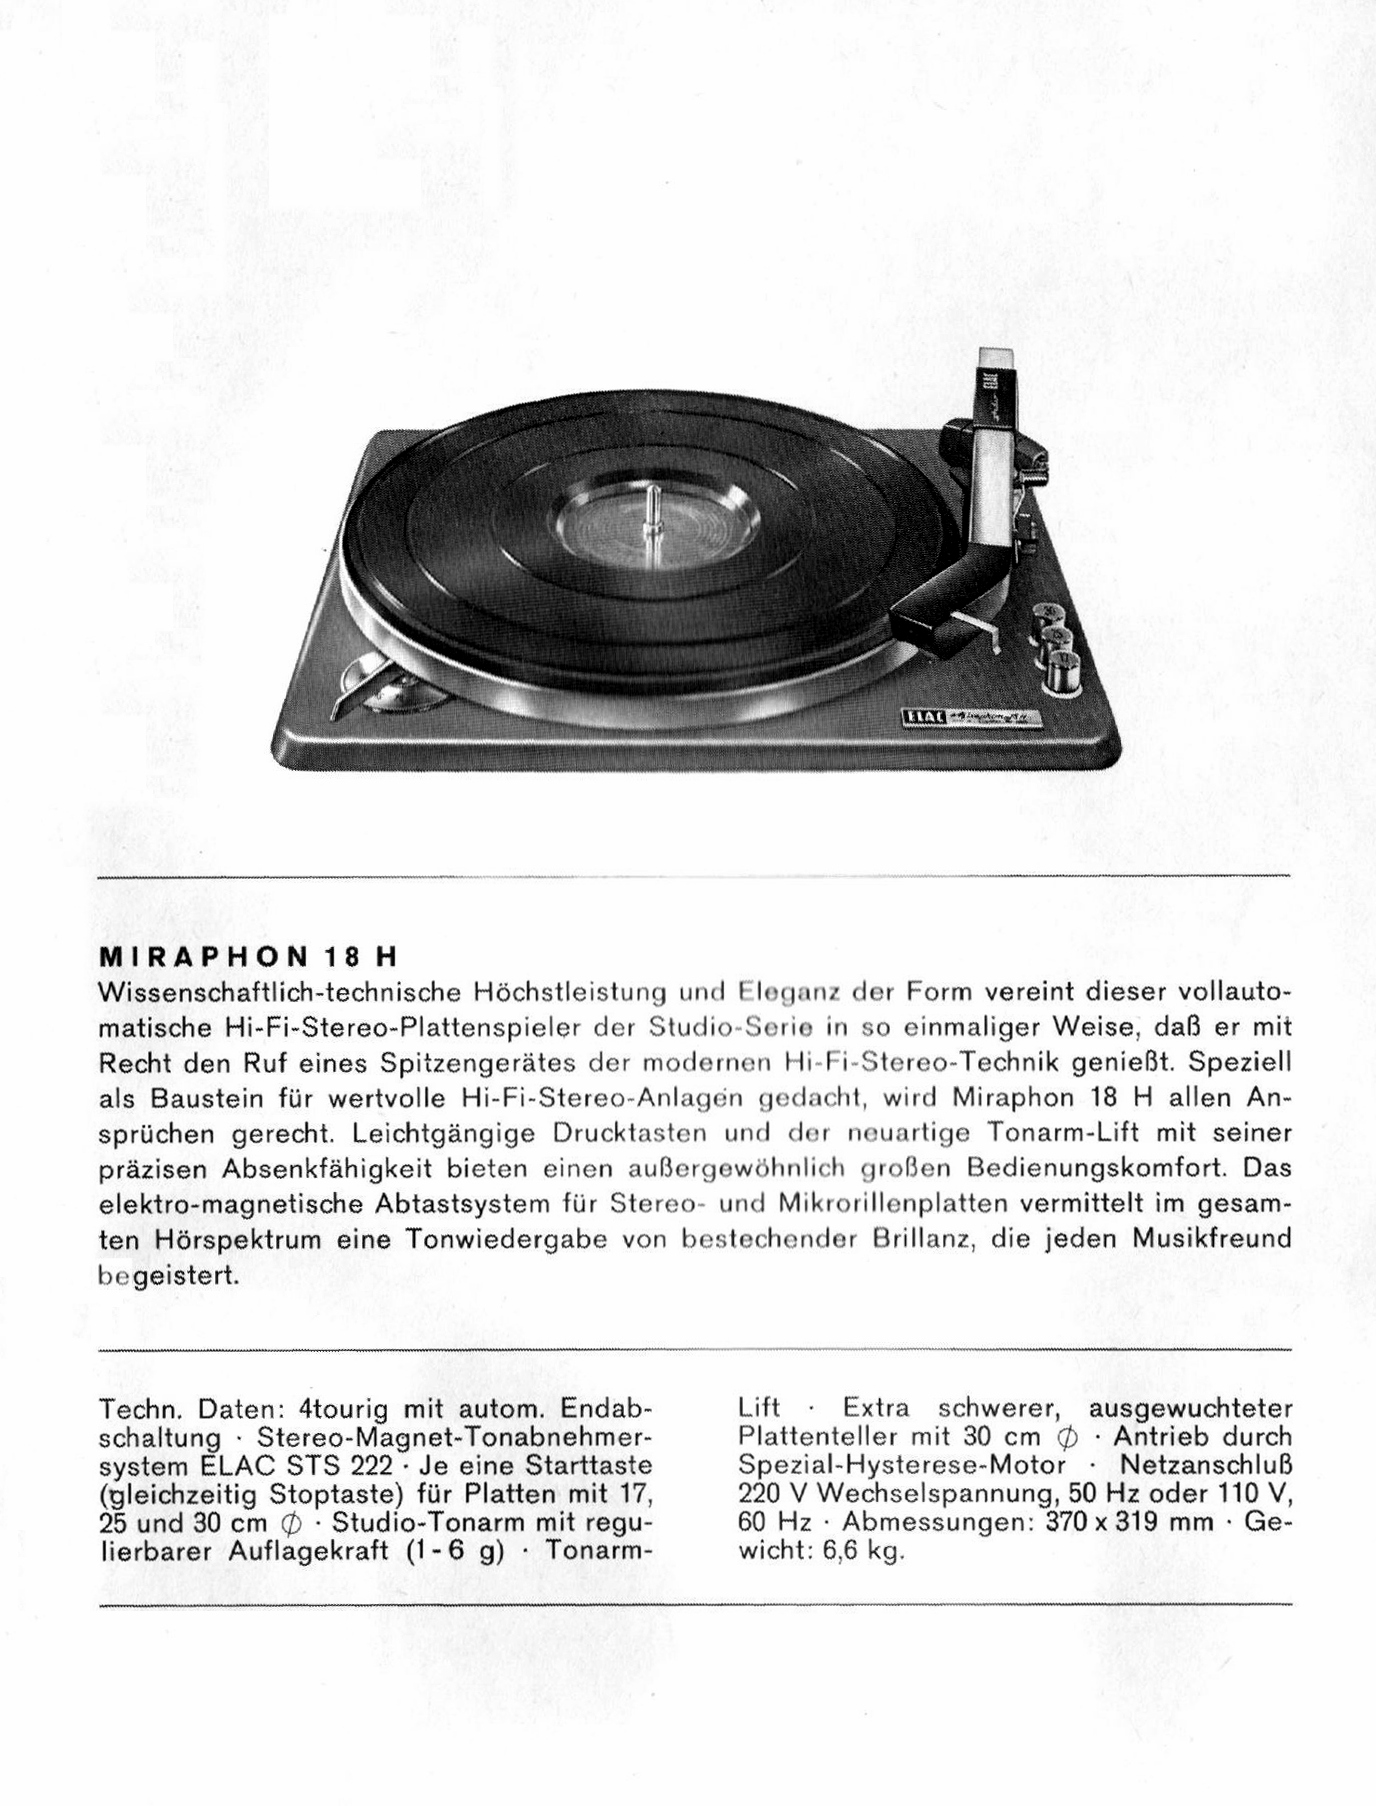 Elac Miraphon 18 H Daten-19651.jpg